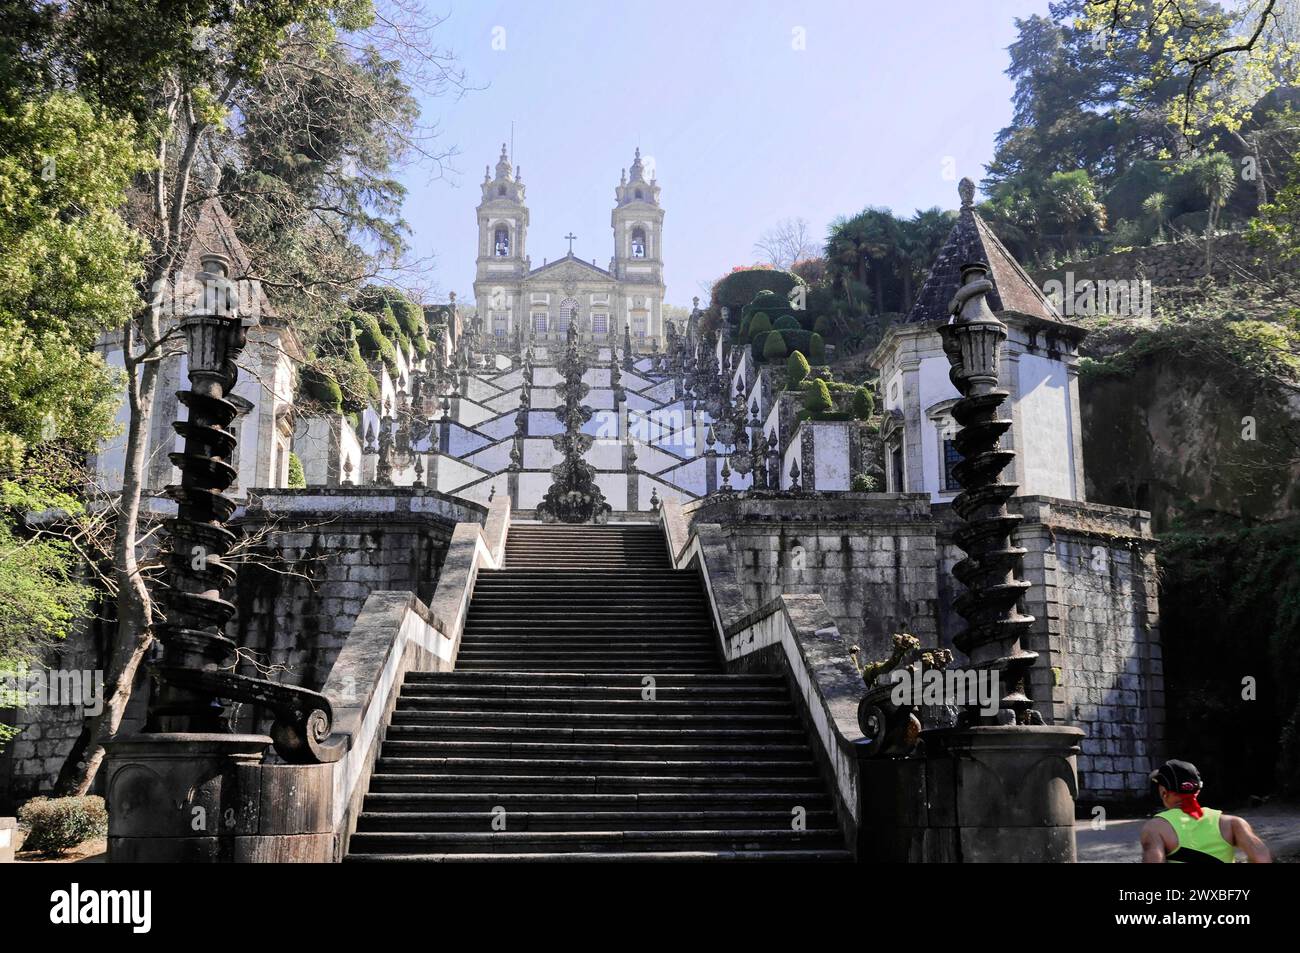 Escalier de Bom Jesus, lieu de pèlerinage, Braga, les gens grimpent les escaliers monumentaux menant à une impressionnante église baroque, Nord du Portugal, Portugal Banque D'Images